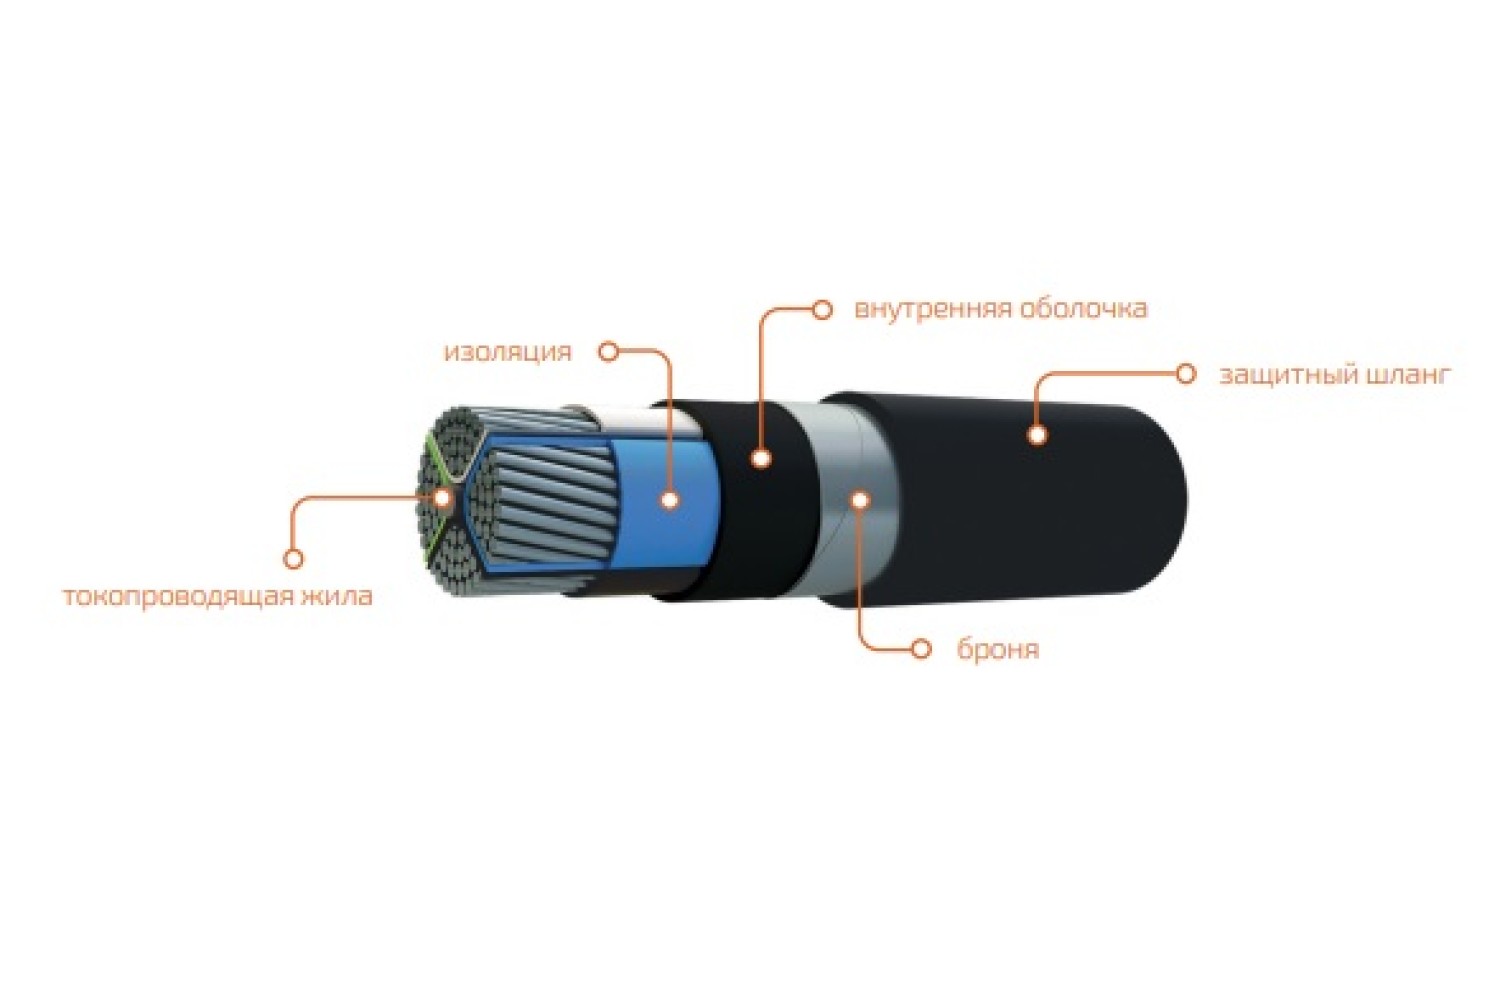 АПвБШп - это обозначение для алюминиевого силового кабеля с изоляцией и оболочкой из поливинилхлорида (ПВХ).